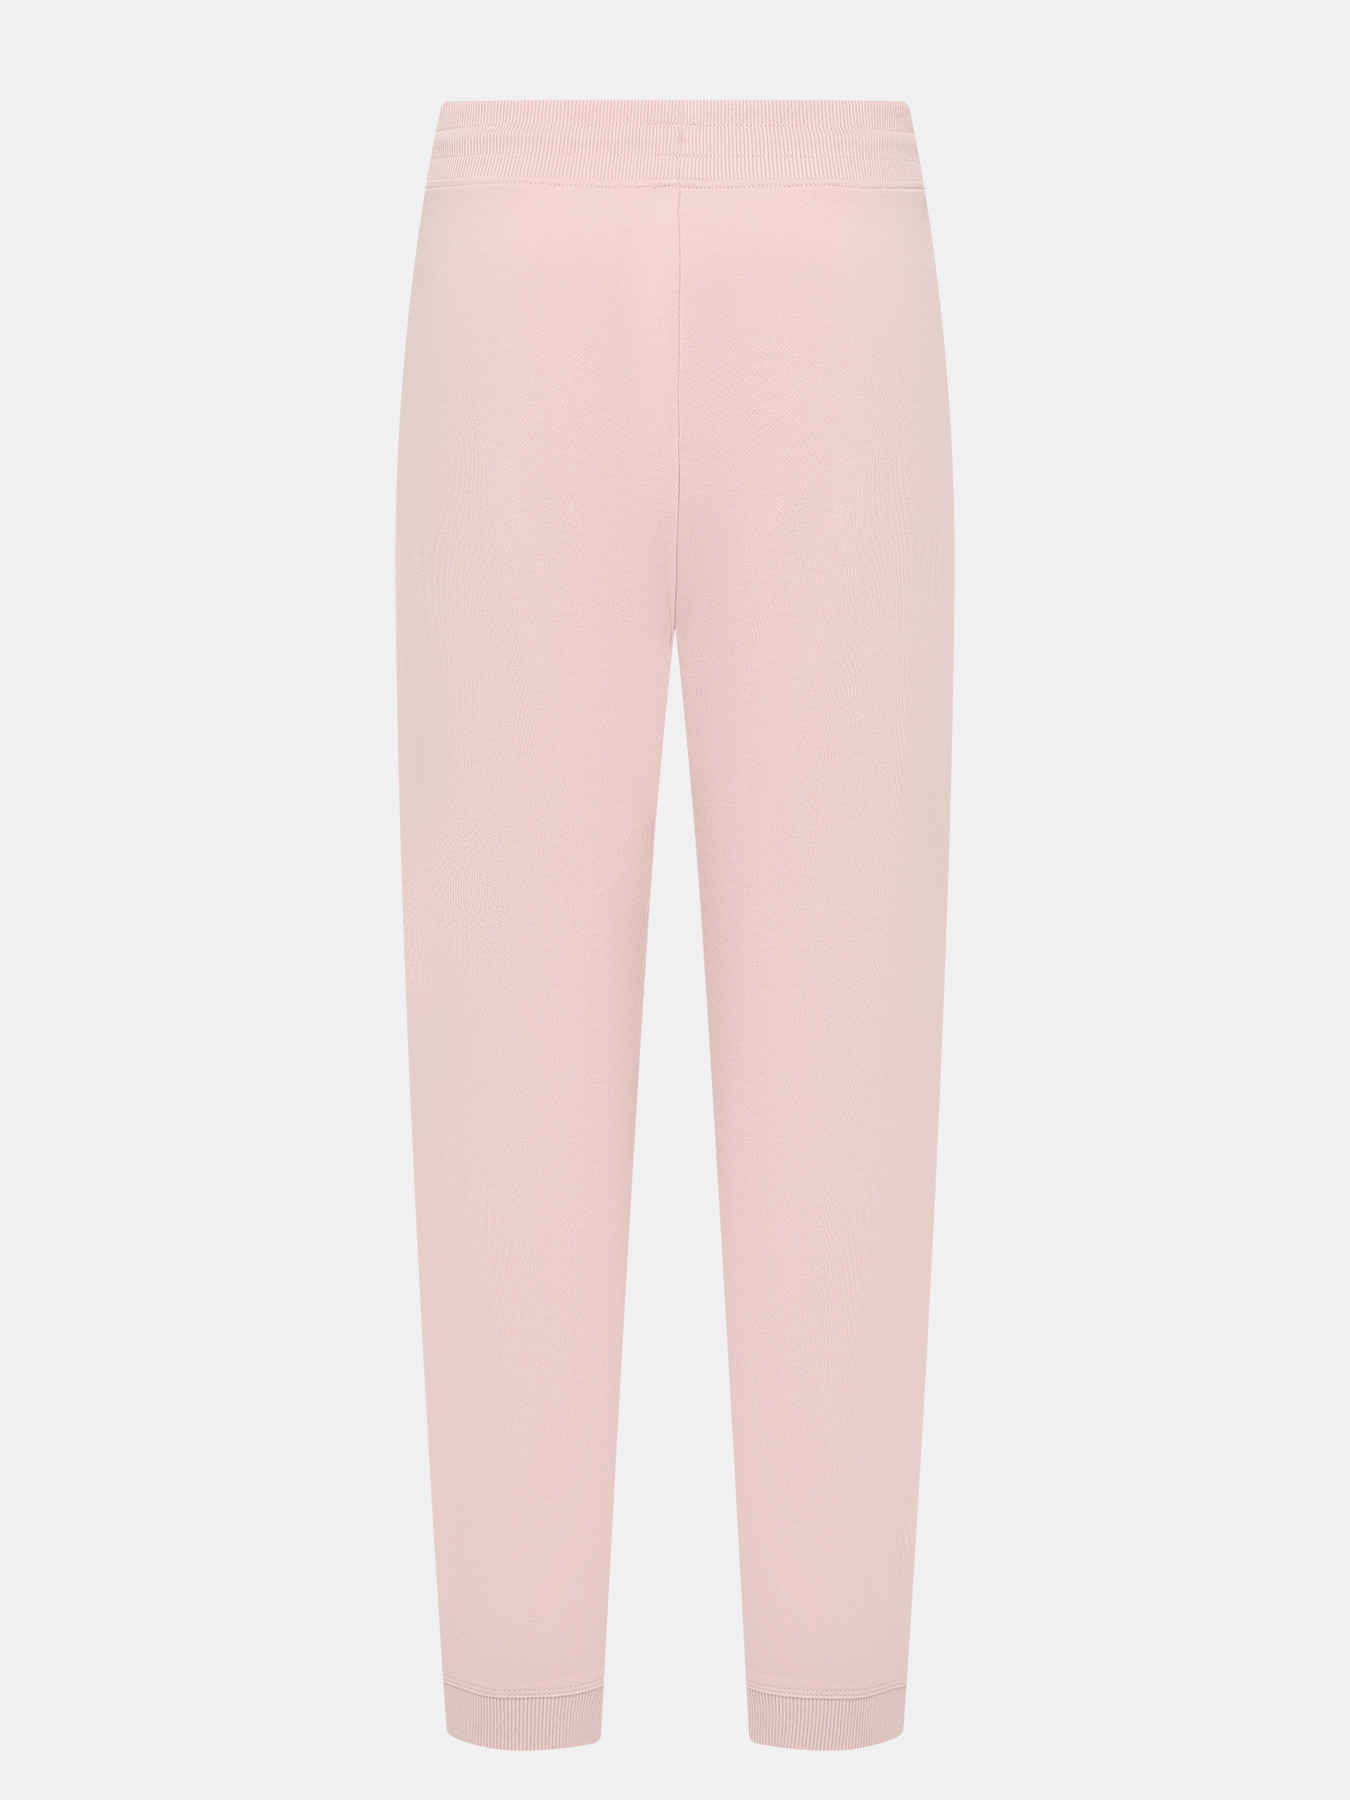 Спортивные брюки Dachibi redlabel HUGO 420594-043, цвет розовый, размер 44-46 - фото 3